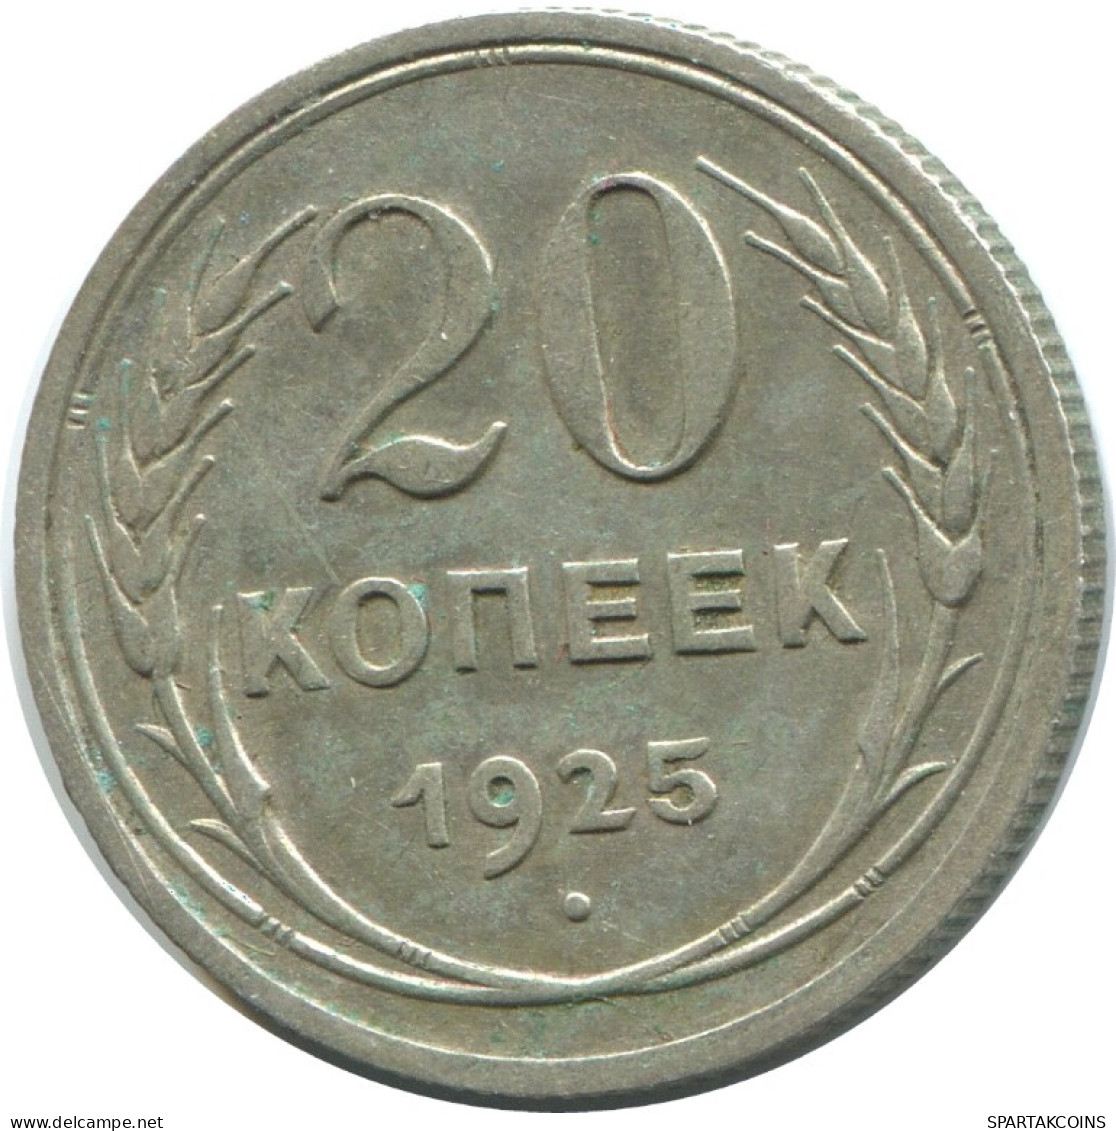 20 KOPEKS 1925 RUSSIE RUSSIA USSR ARGENT Pièce HIGH GRADE #AF336.4.F.A - Rusland